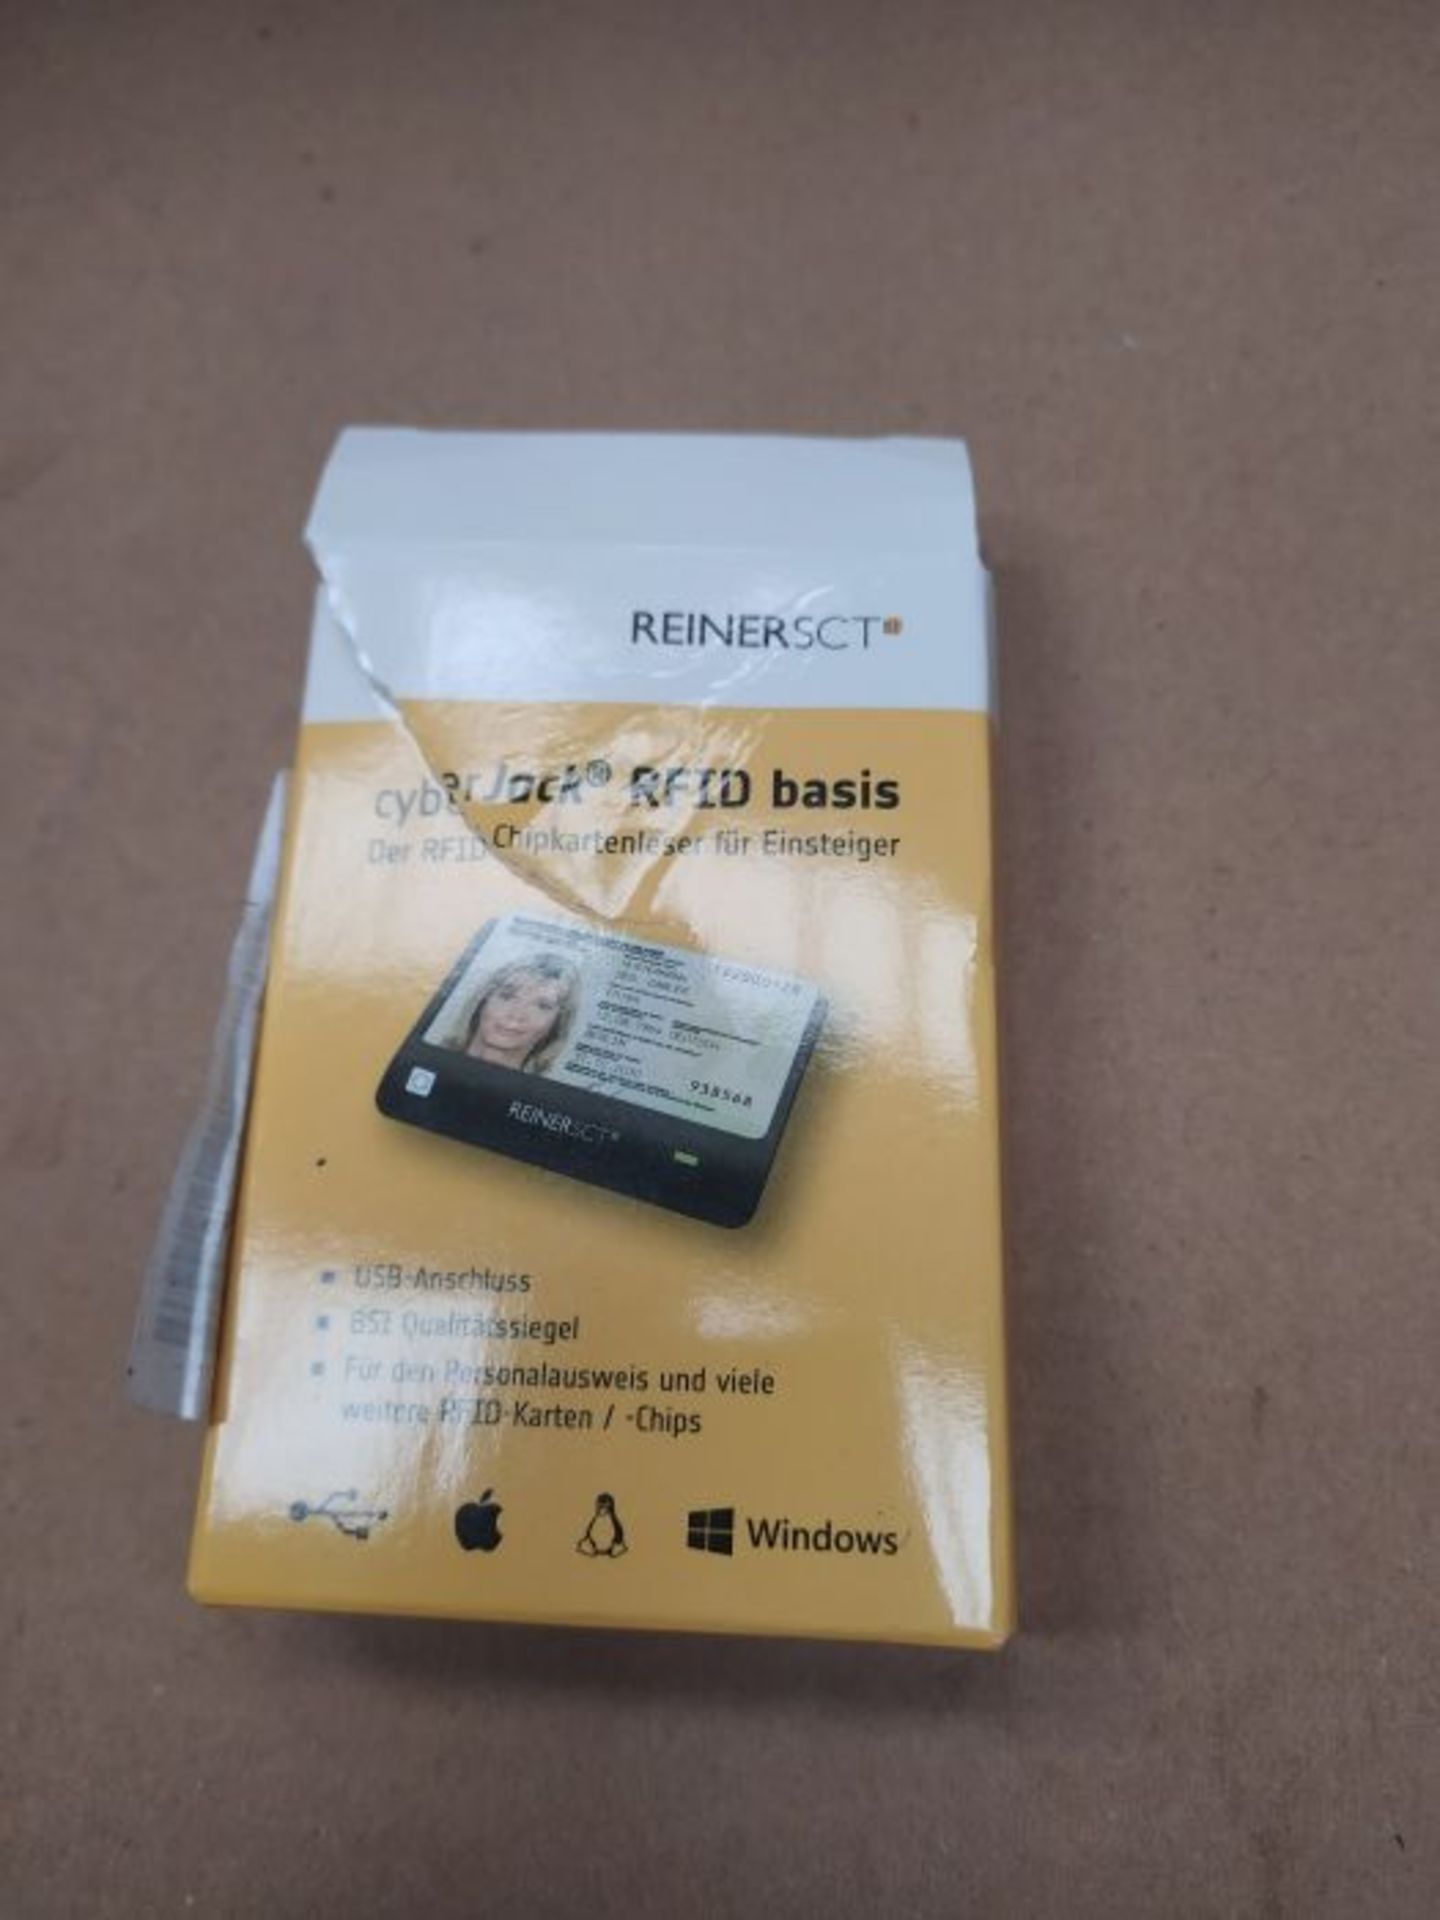 Reiner SCT cyberJack RFID Basis nPA Smart Card Reader eID BSI-Certified with loginCard - Image 2 of 3